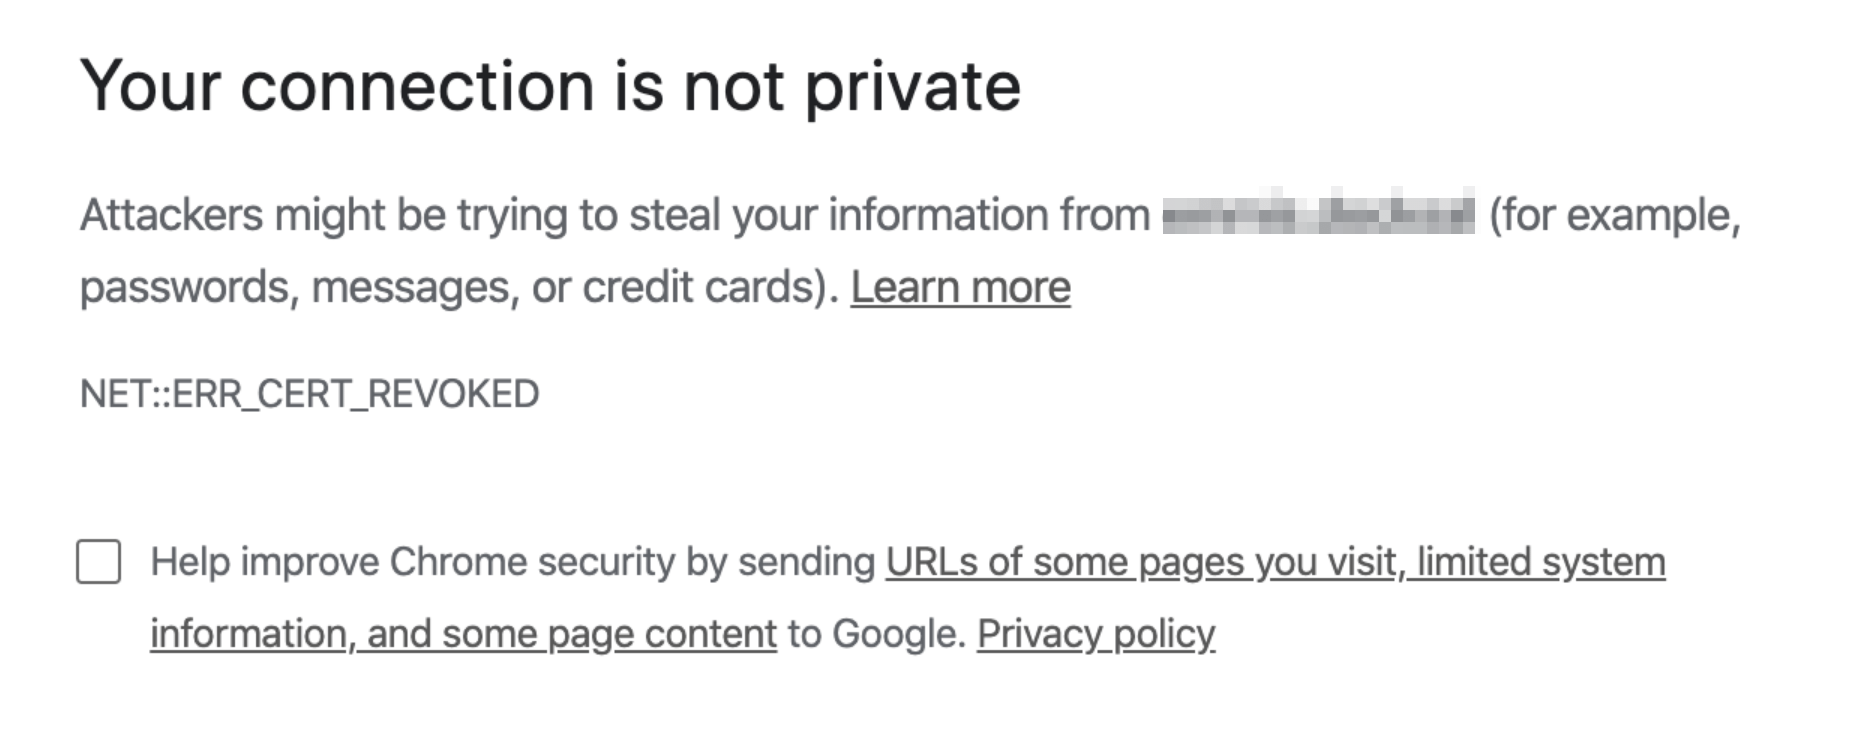 The SSL certificate revoked error